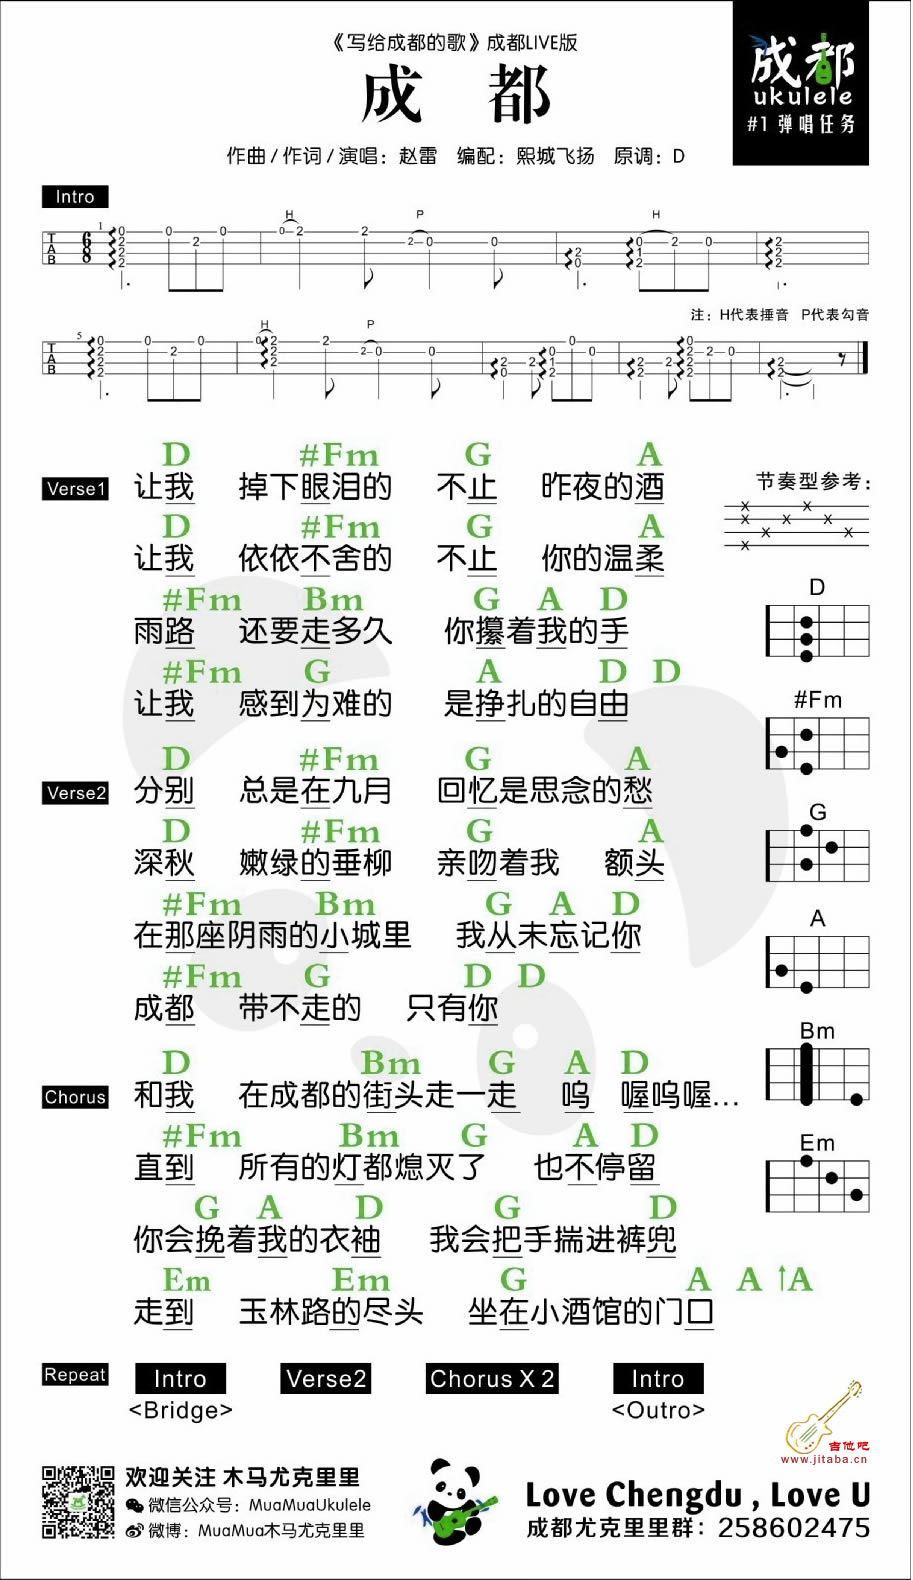 成都ukulele谱-赵雷-写给成都的歌尤克里里谱